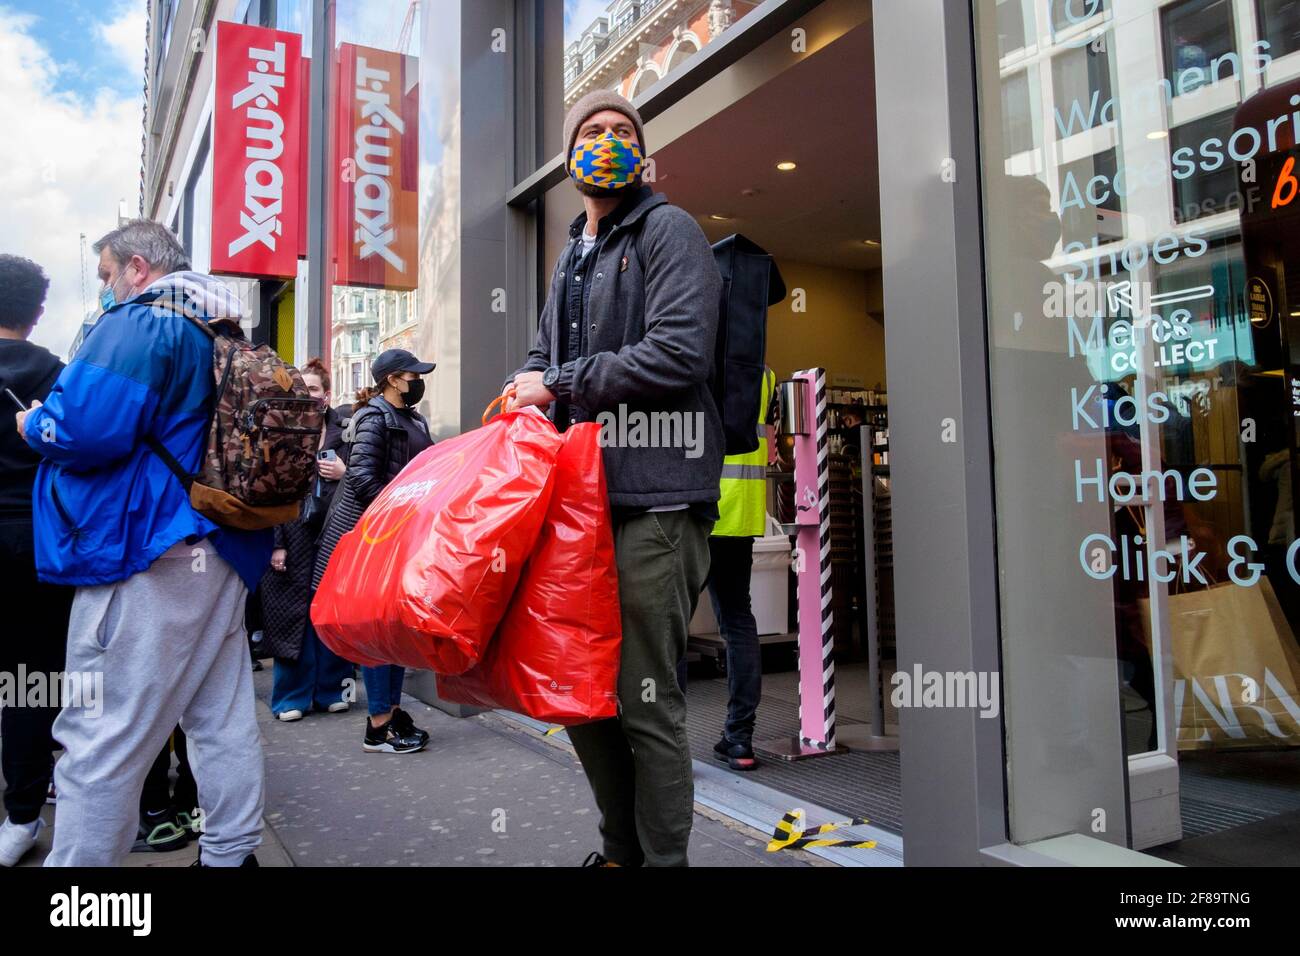 12 avril 2021, Shoppers à l'extérieur du magasin TKmaxx d'Oxford Street, Londres, suite à l'assouplissement des restrictions Covid du gouvernement britannique permettant la réouverture de magasins de détail non essentiels en Angleterre. Banque D'Images